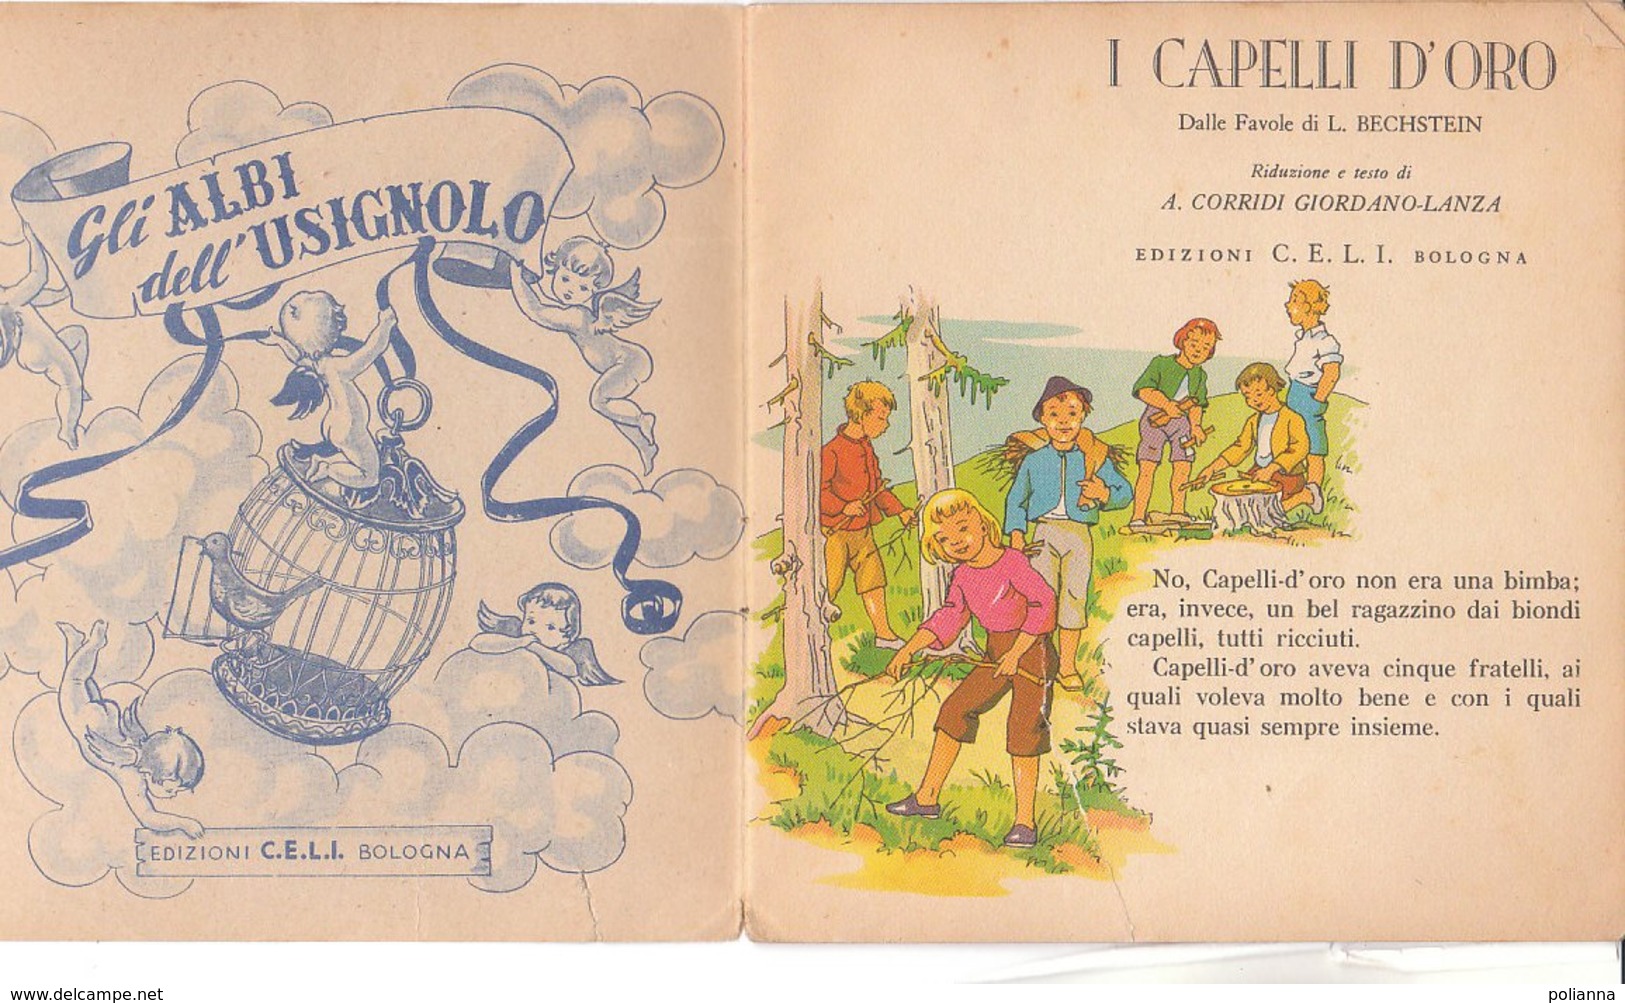 M#0V70 Albo Illustrato Collana Dell'Usignolo : Bechstein I CAPELLI D'ORO Ed. C.E.L.I.anni '50 - Oud